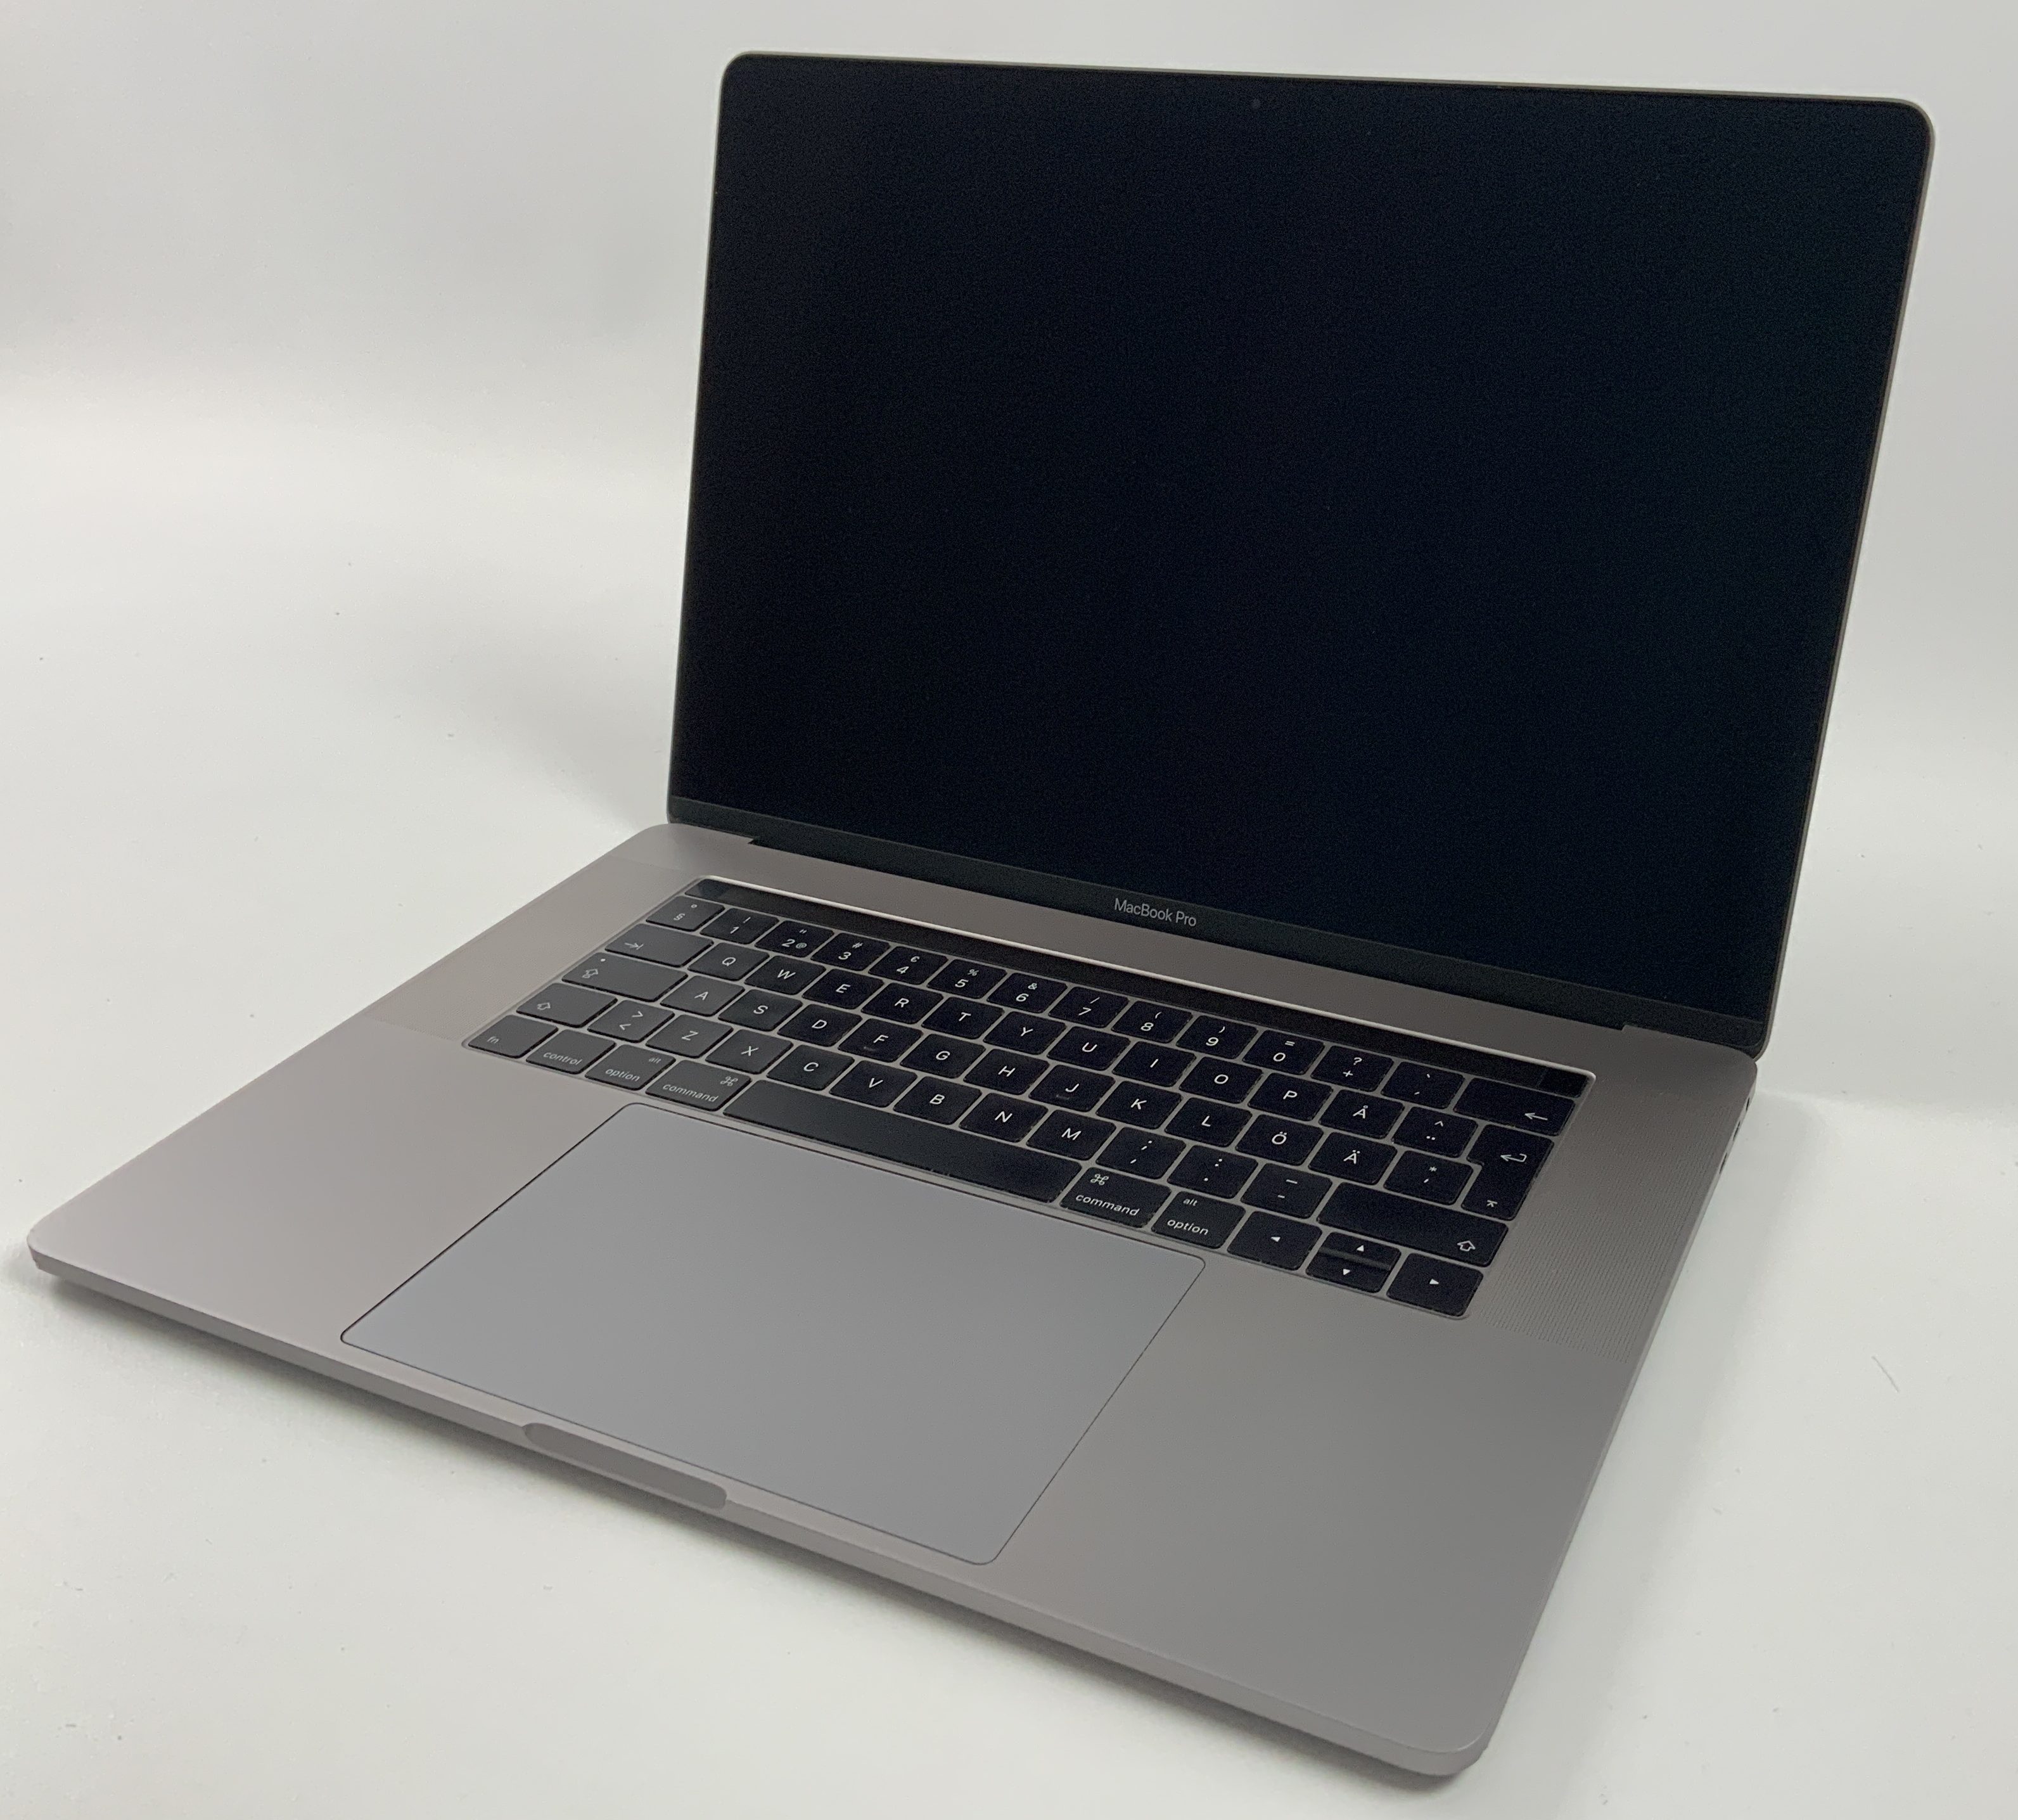 MacBook Pro 15" Touch Bar Late 2016 (Intel Quad-Core i7 2.9 GHz 16 GB RAM 512 GB SSD), Space Gray, Intel Quad-Core i7 2.9 GHz, 16 GB RAM, 512 GB SSD, bild 1